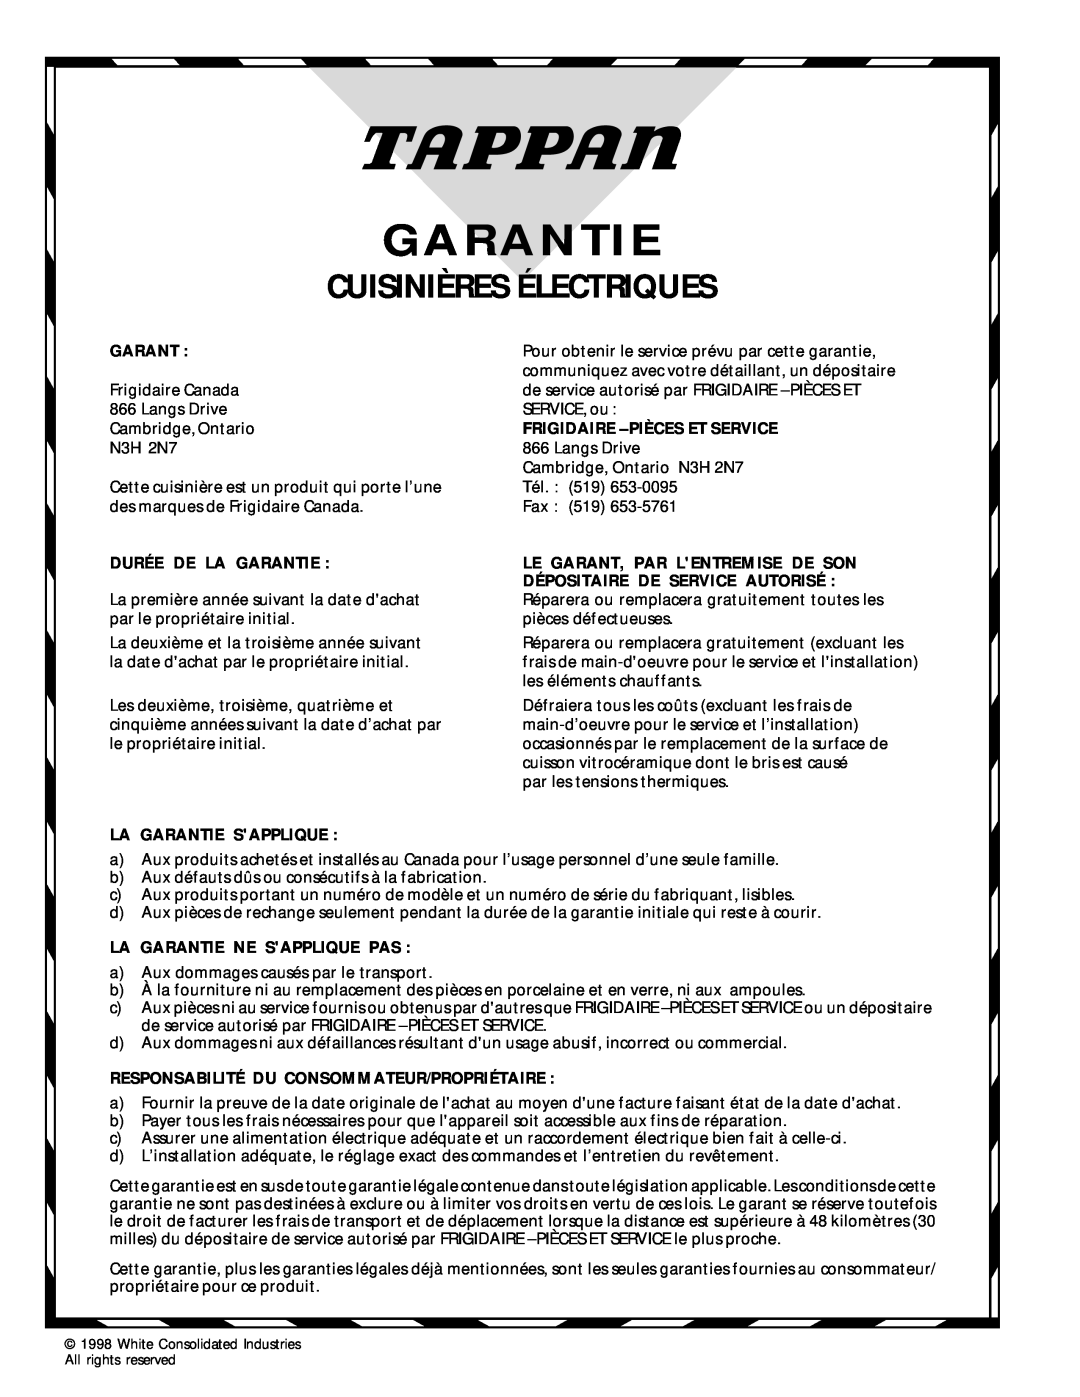 Tappan 318200409 Cuisinières Électriques, Durée De La Garantie, La Garantie Sapplique, Frigidaire - Pièces Et Service 